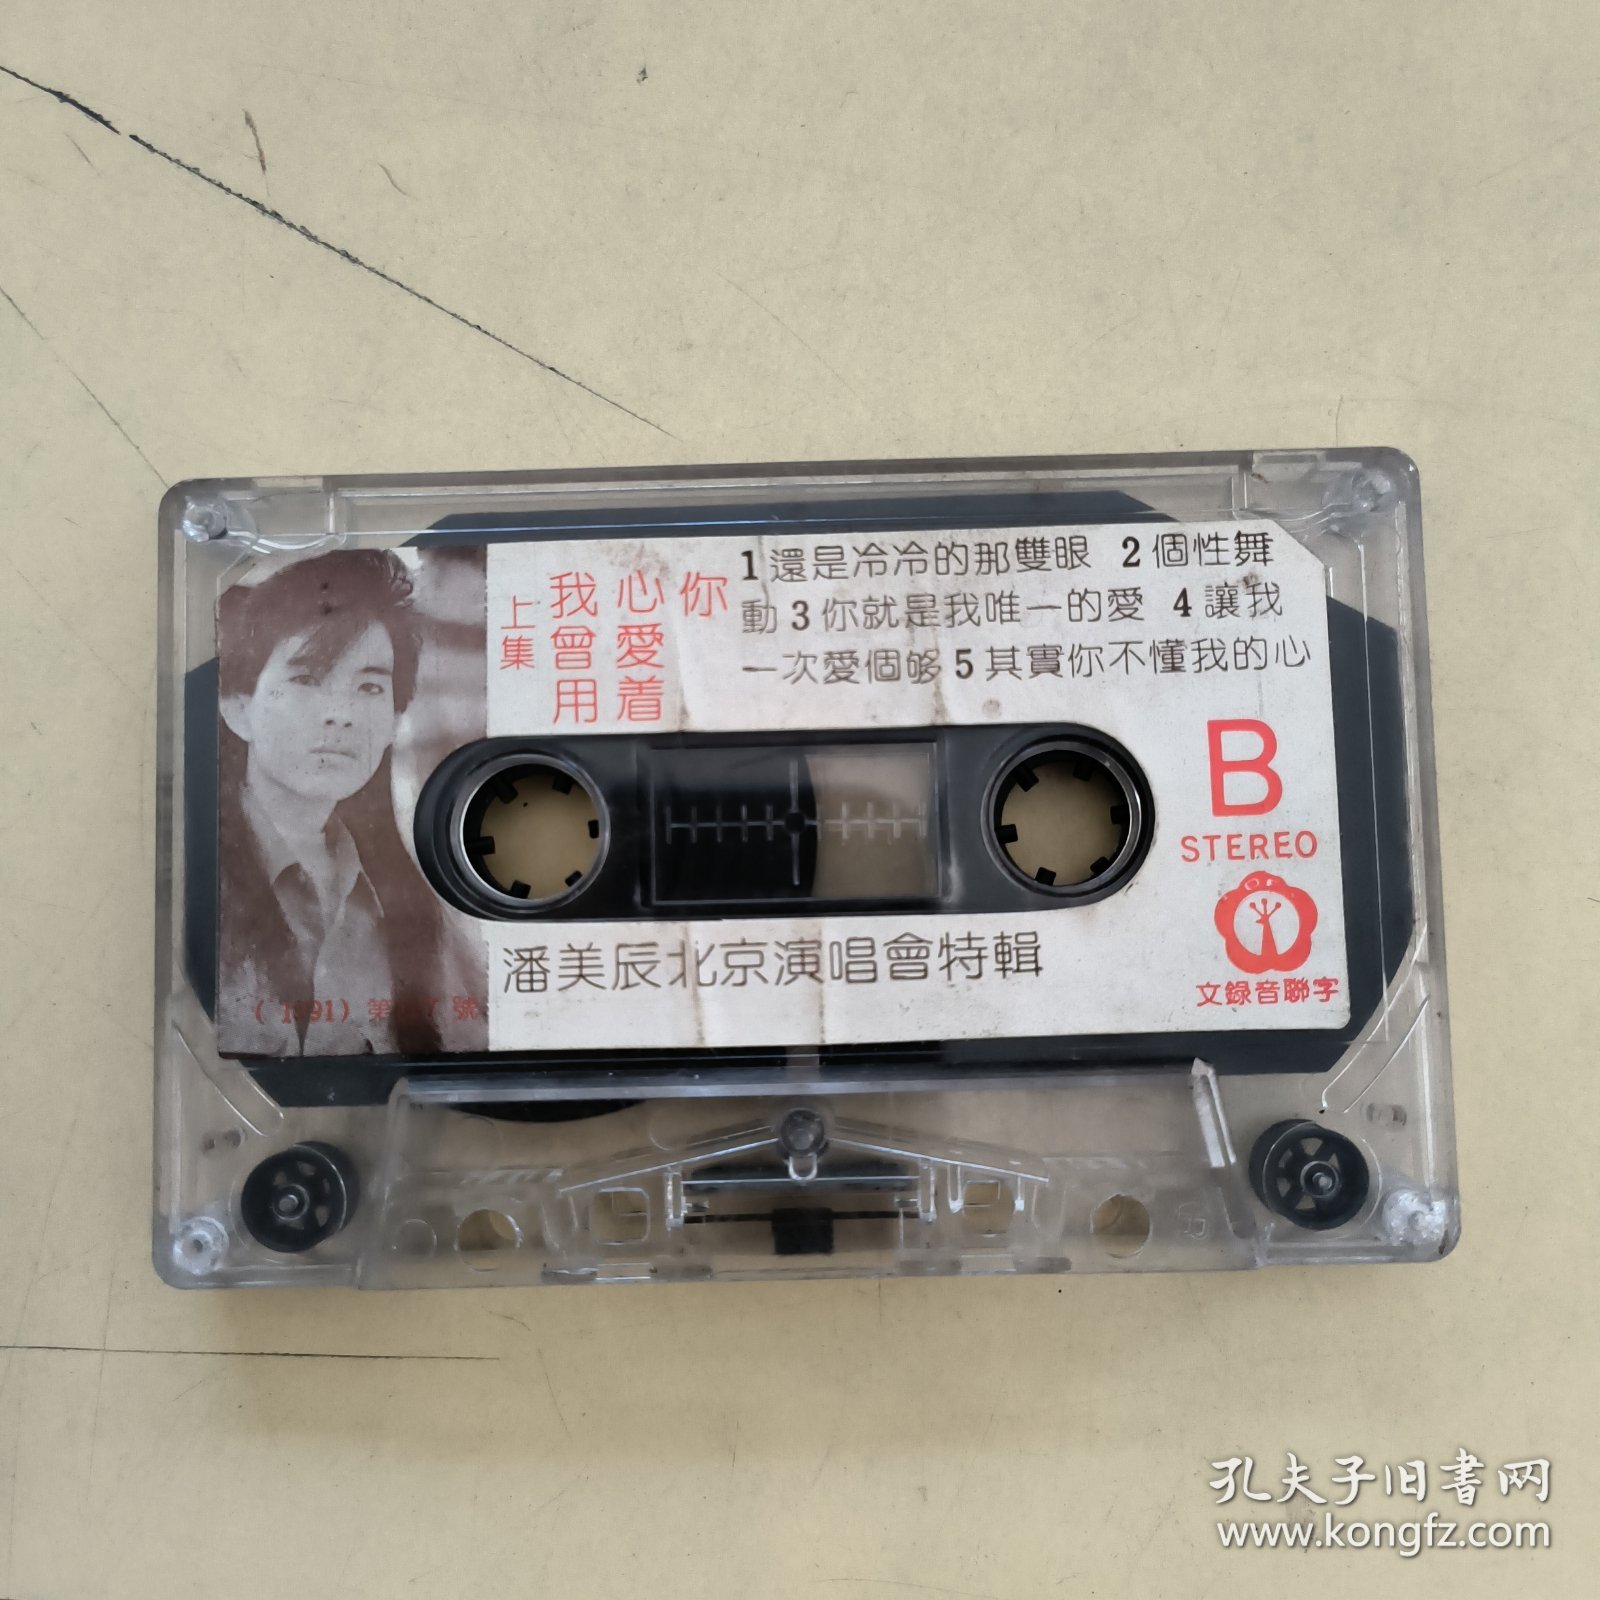 磁带--- 潘美辰北京演唱会特辑 ，我曾用心爱着你(上集） ，请买家看好图下单，免争议，确保正常播放发货，一切以图为准